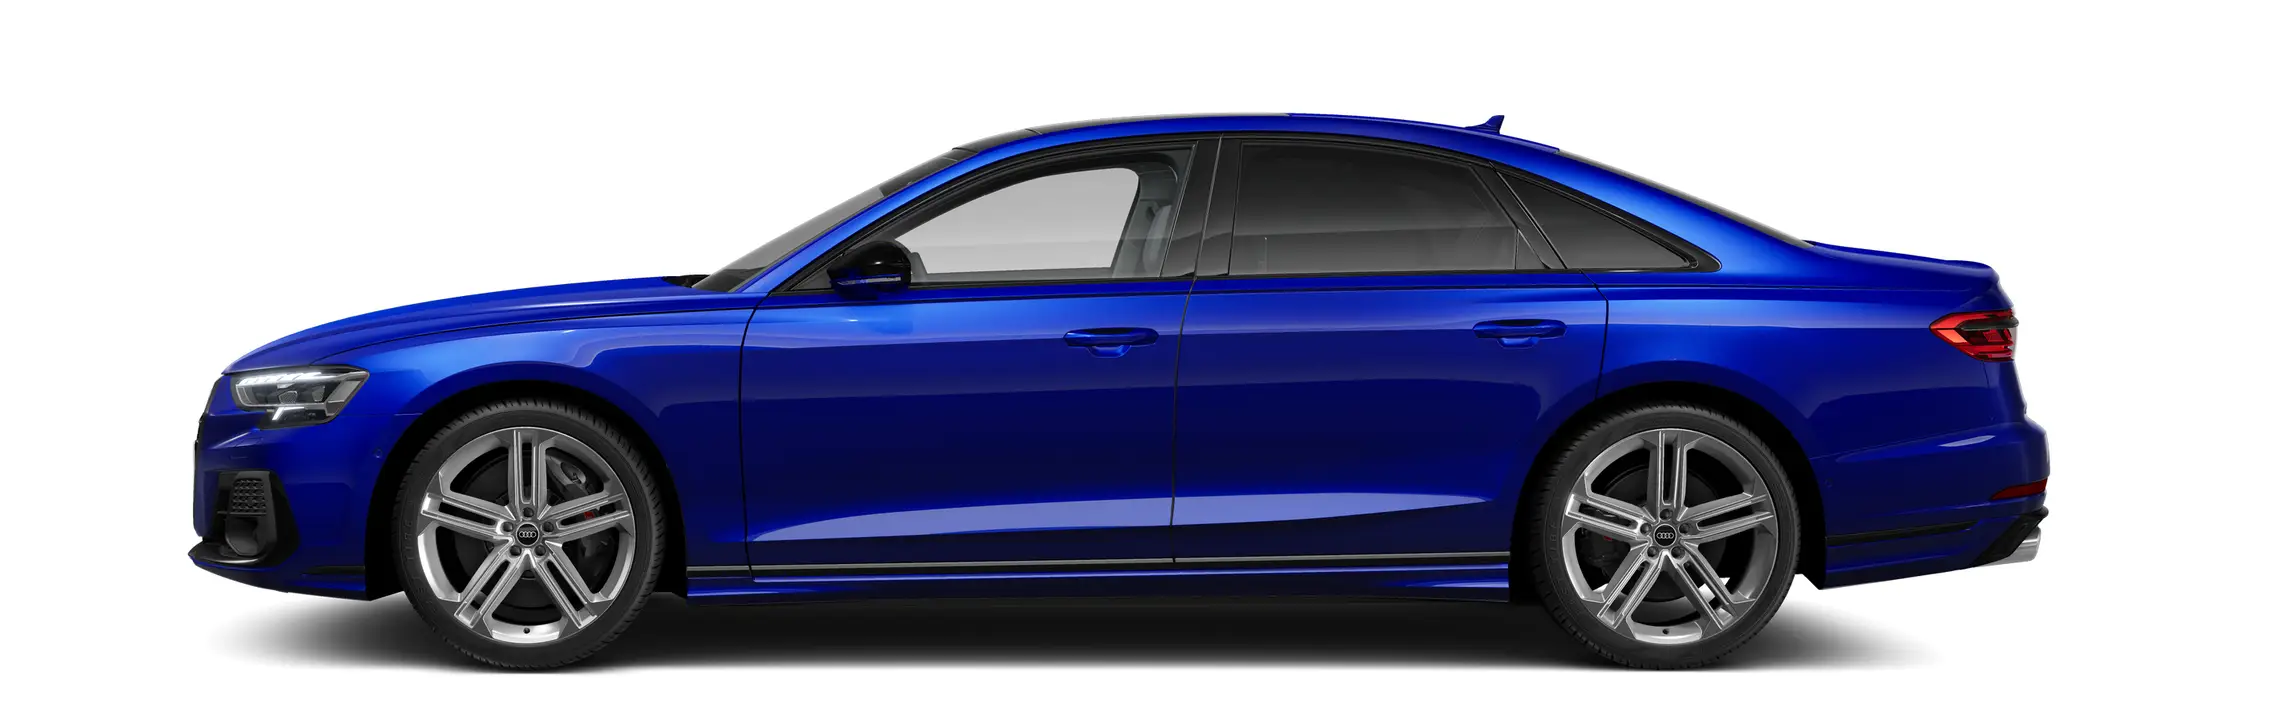 أودي S8 exterior - Side Profile